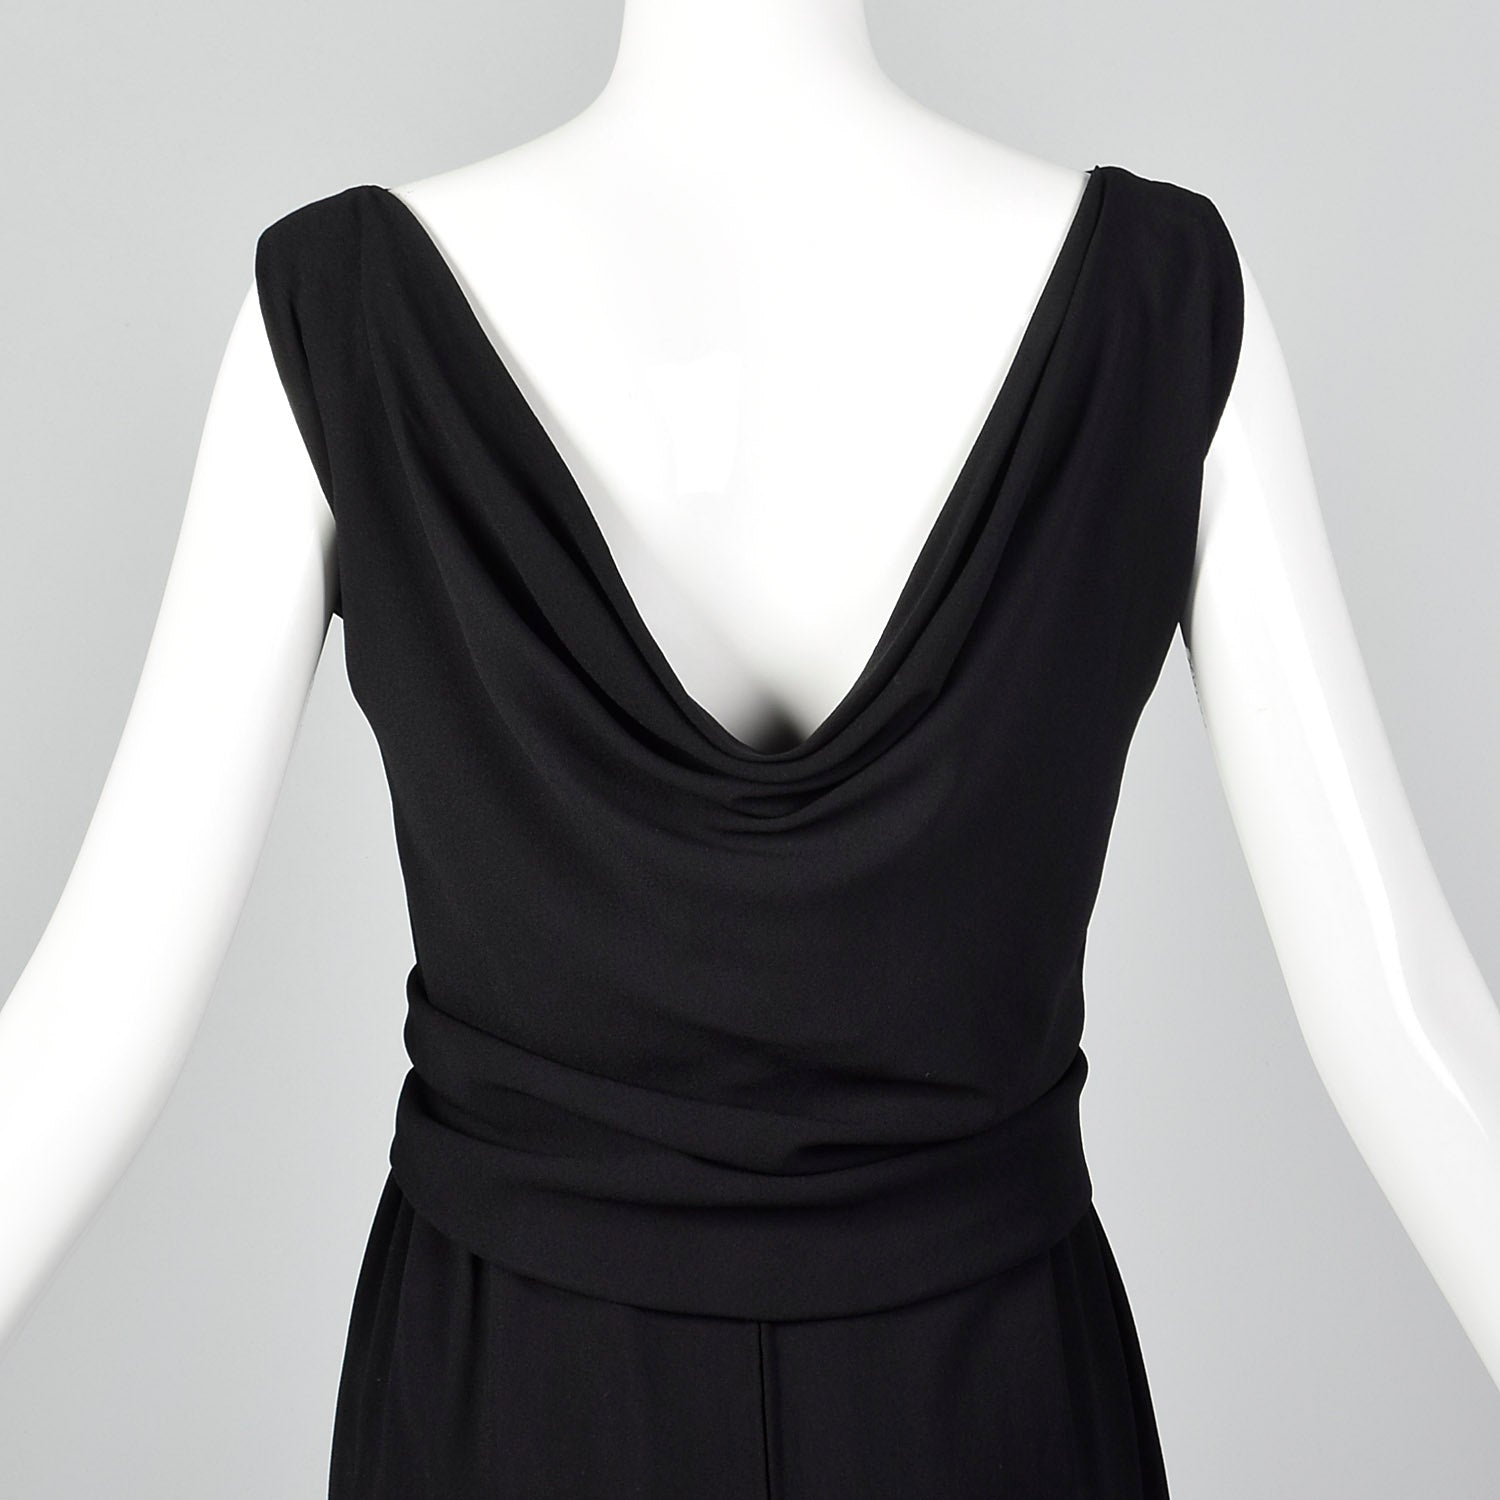 Small 1960s Black Dress